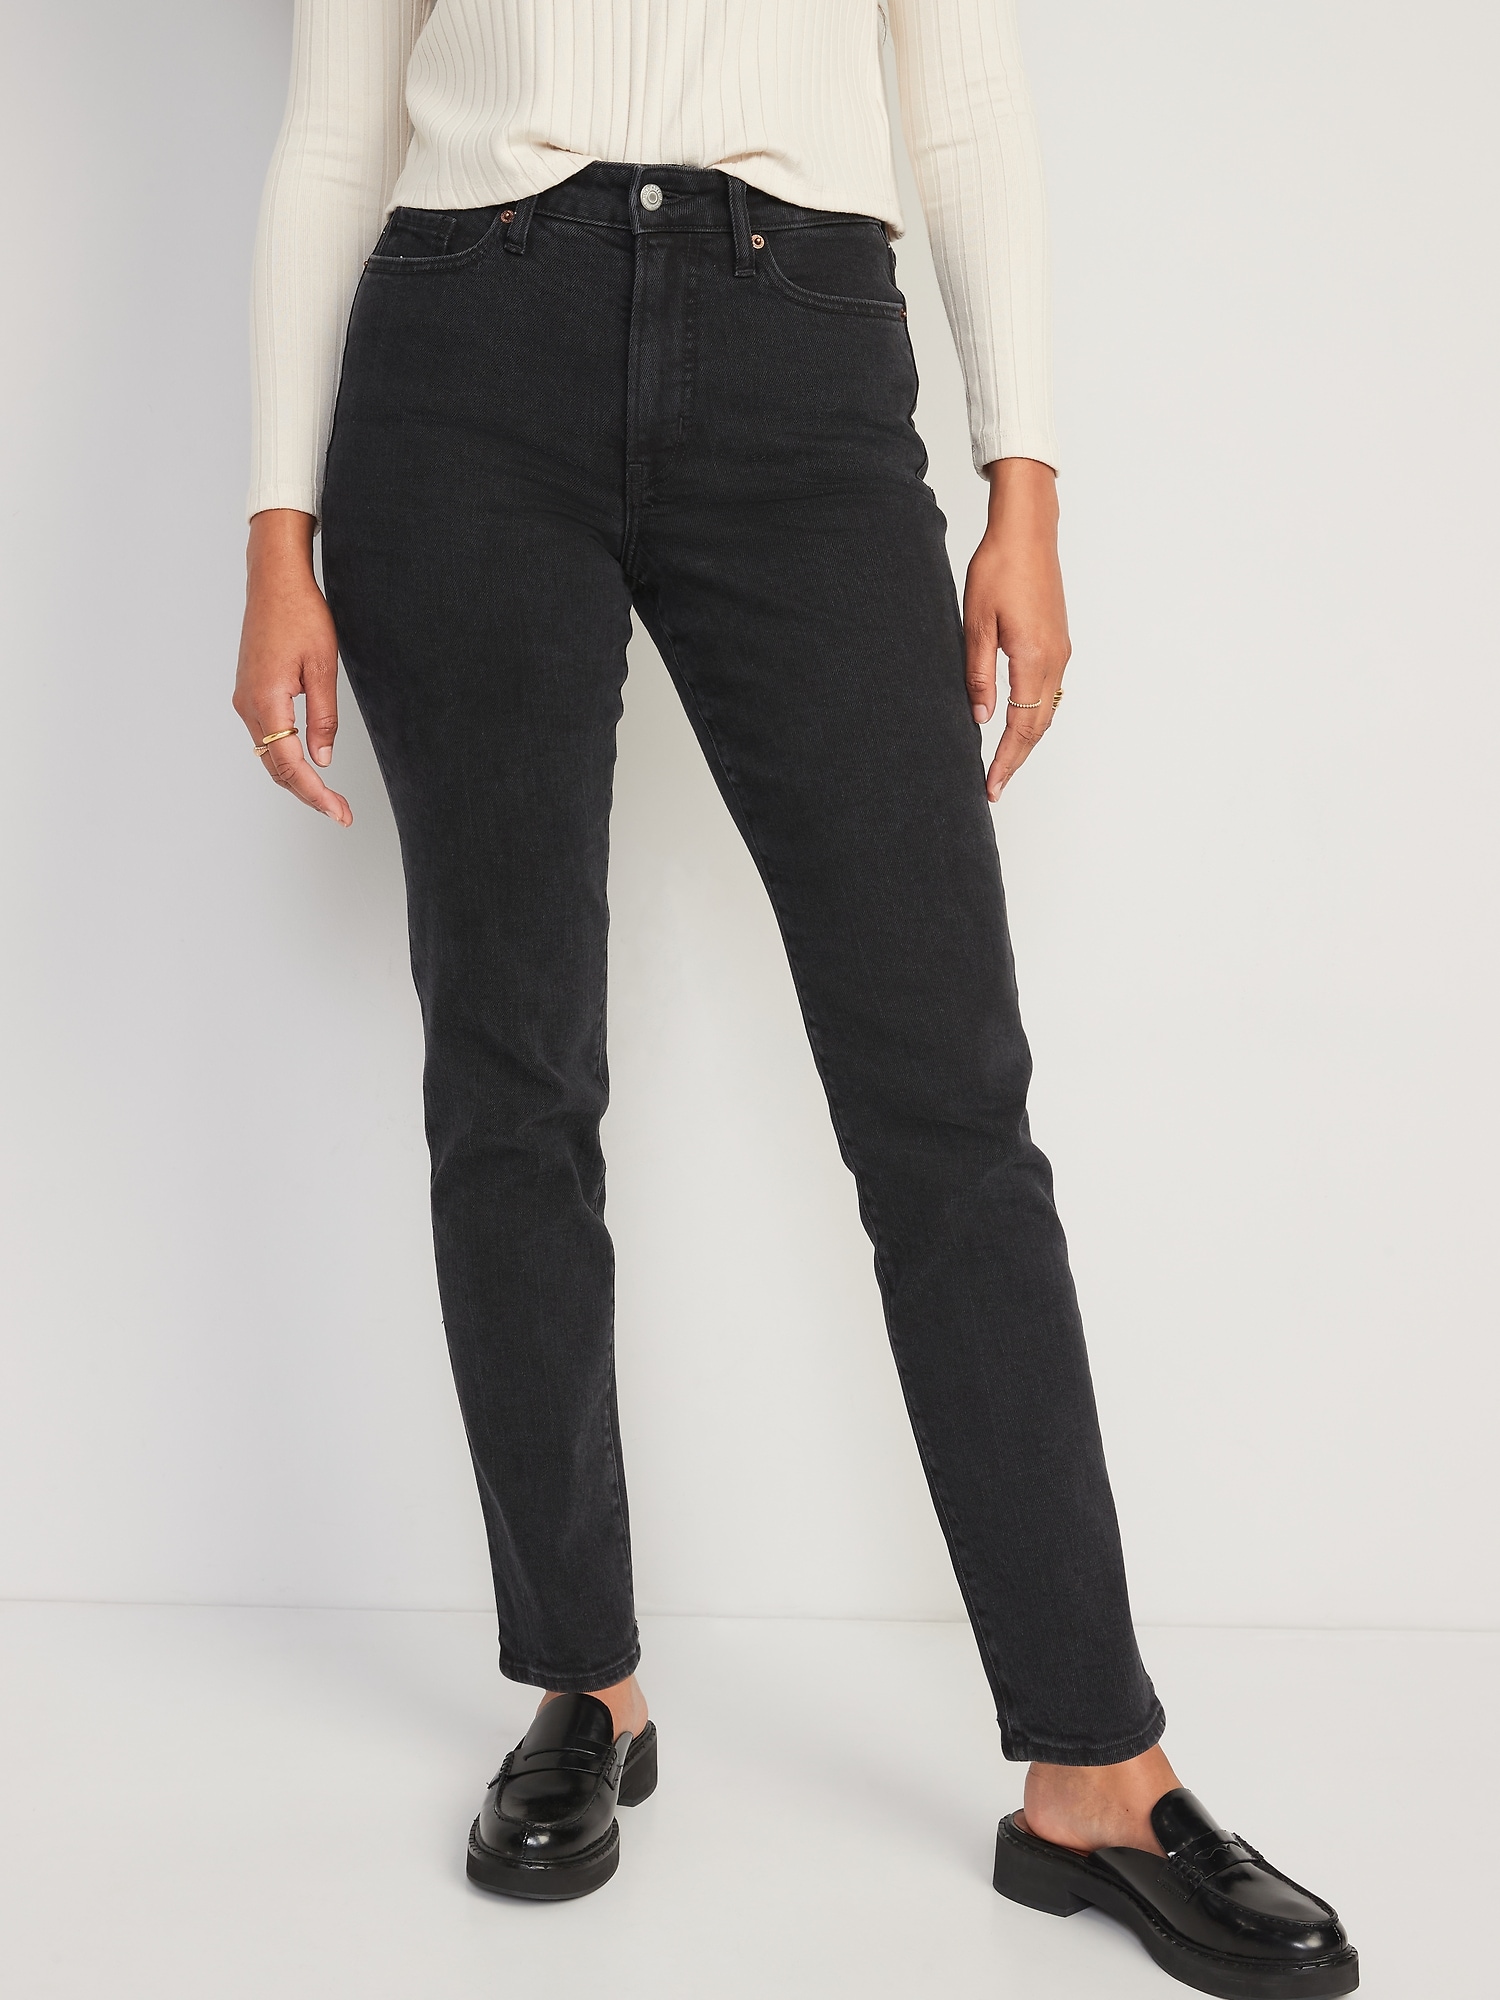 High-Waisted OG Straight Black Jeans for Women